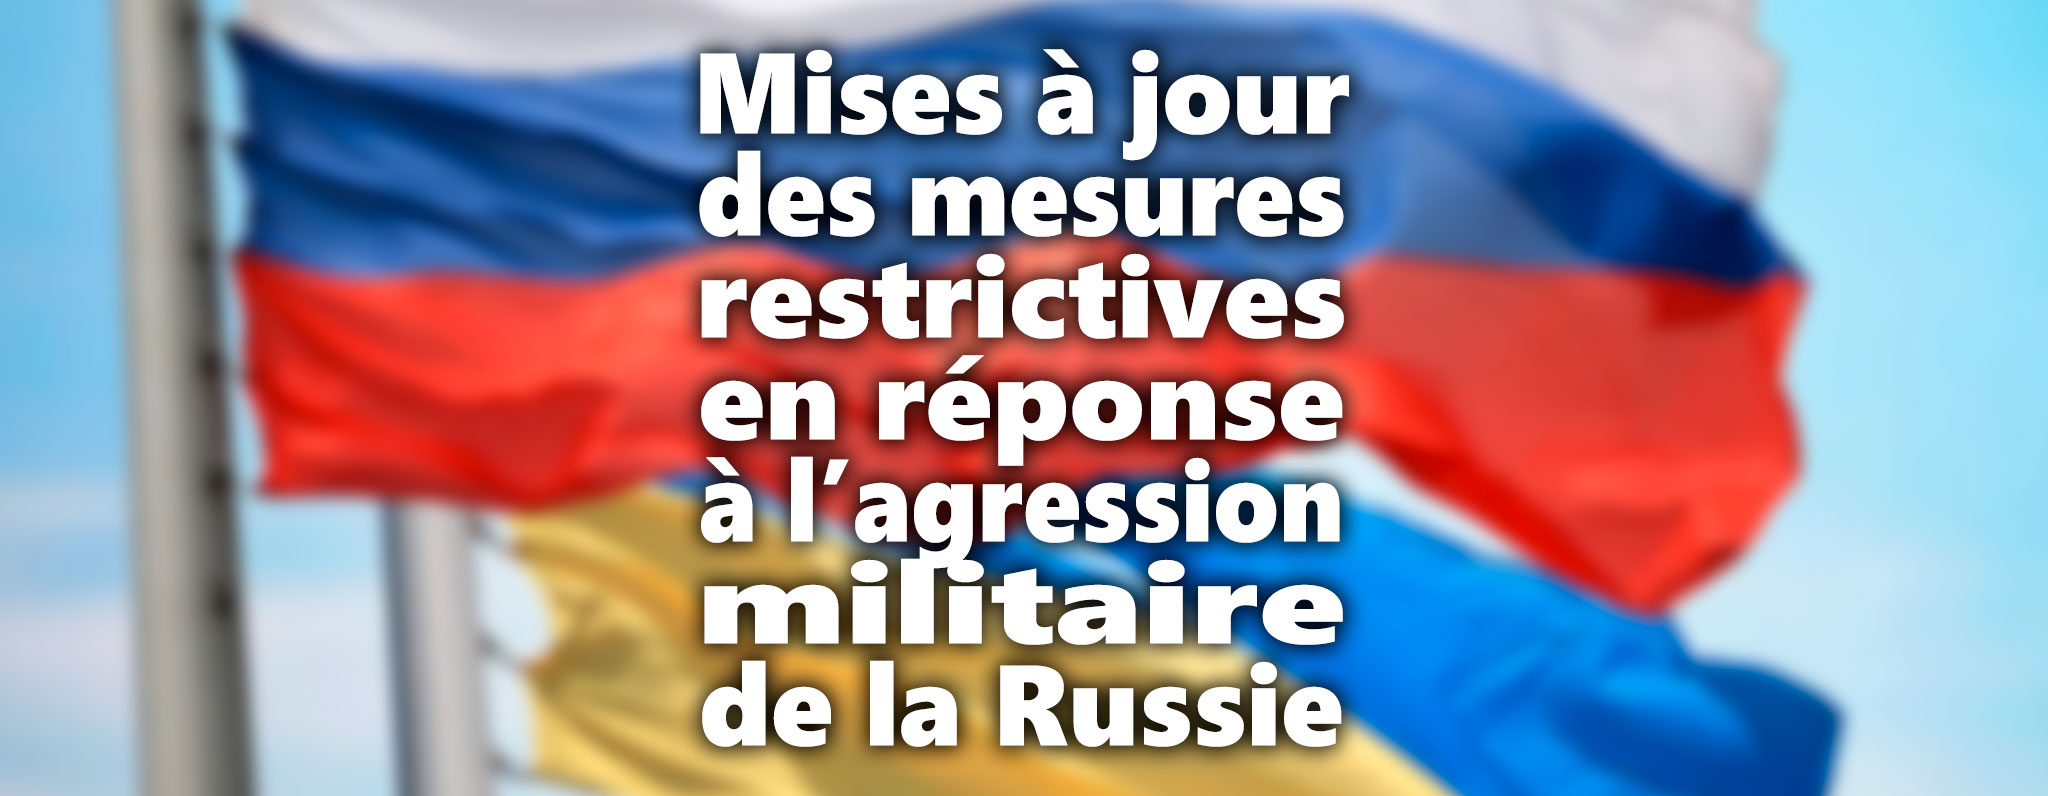 Mises à jour constantes des mesures en réponse à l'agression militaire de la Russie